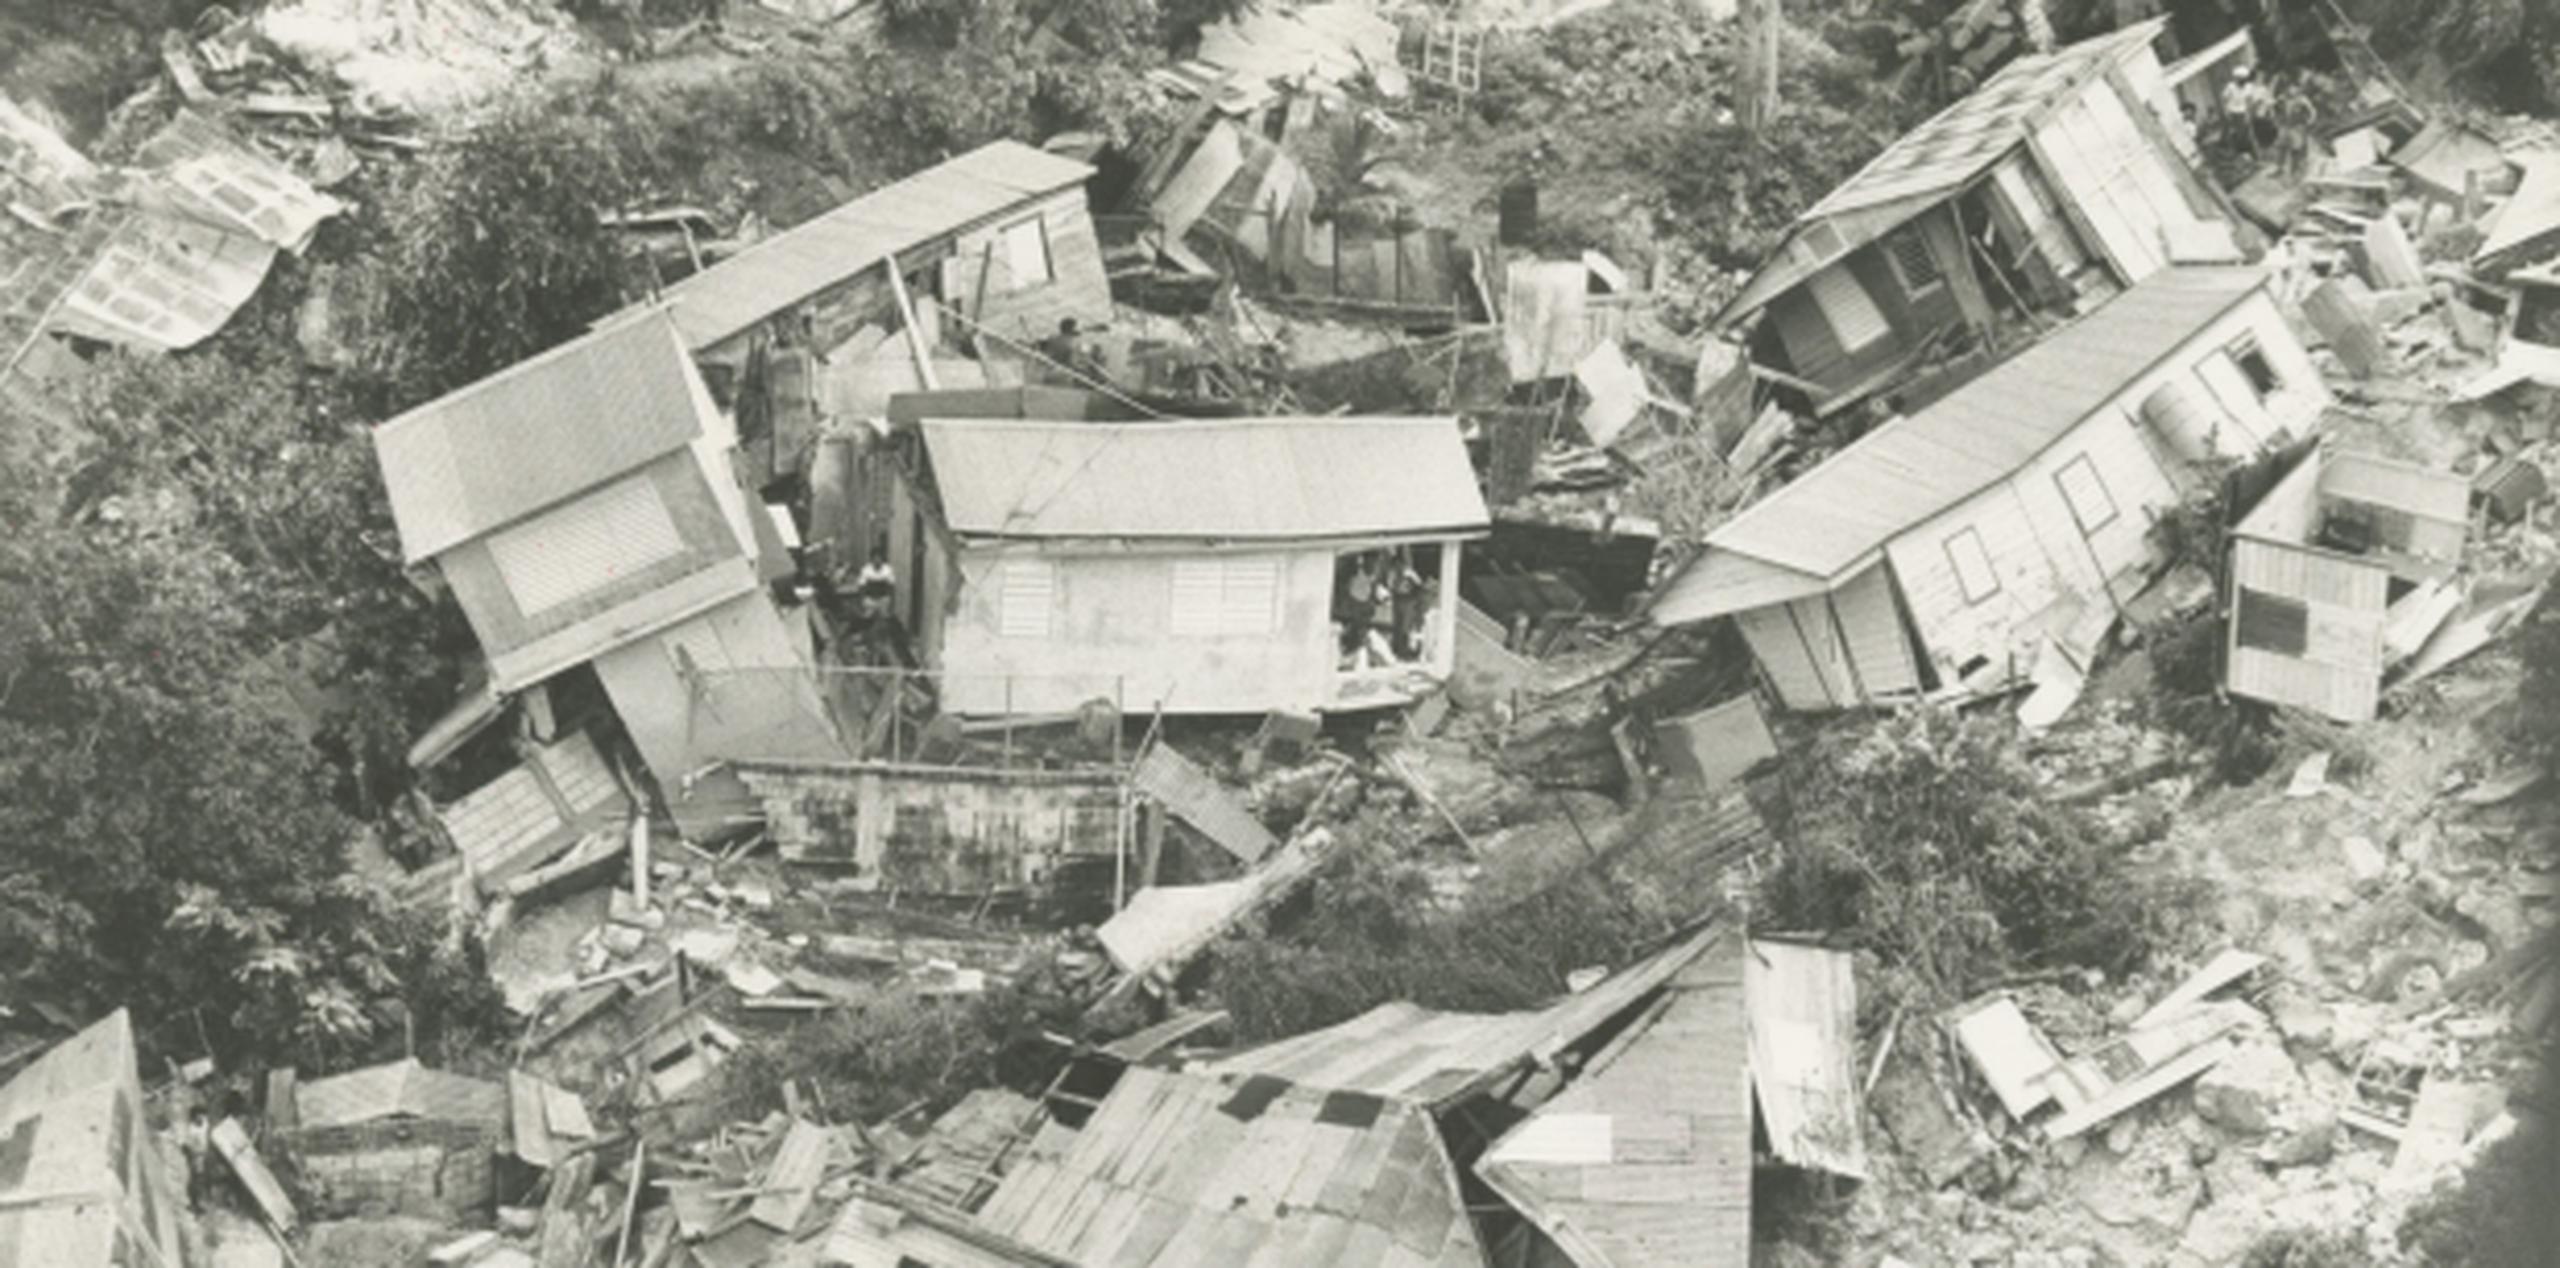 En el sector Las Batatas del barrio El Tuque de Ponce, las aguas arrastraron a varias familias y murieron alrededor de 15 personas. (Archivo)